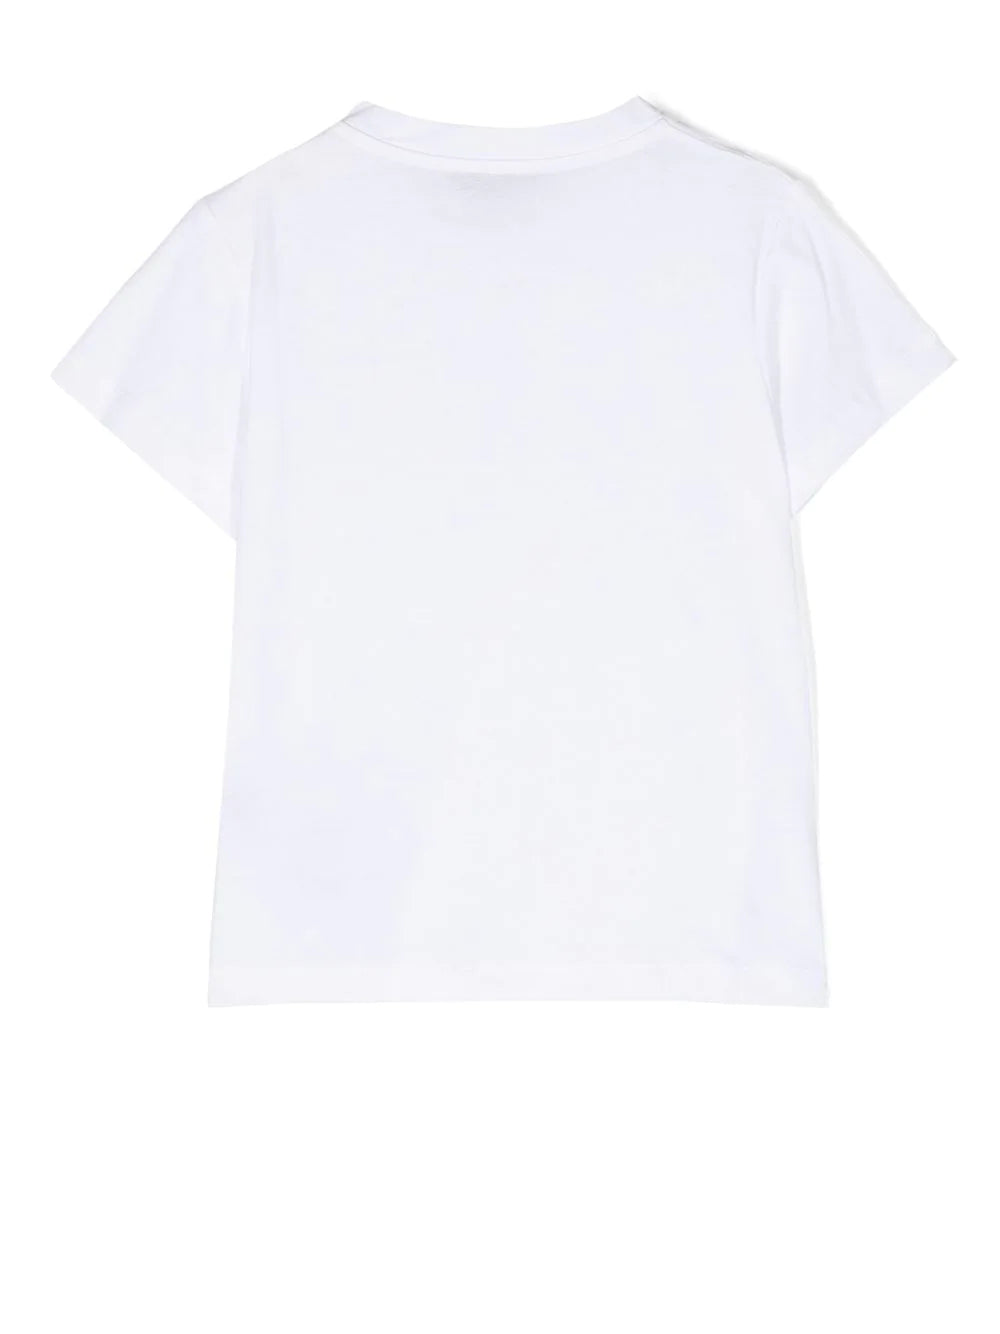 Balmain Kids T-shirt bianca con placca logo